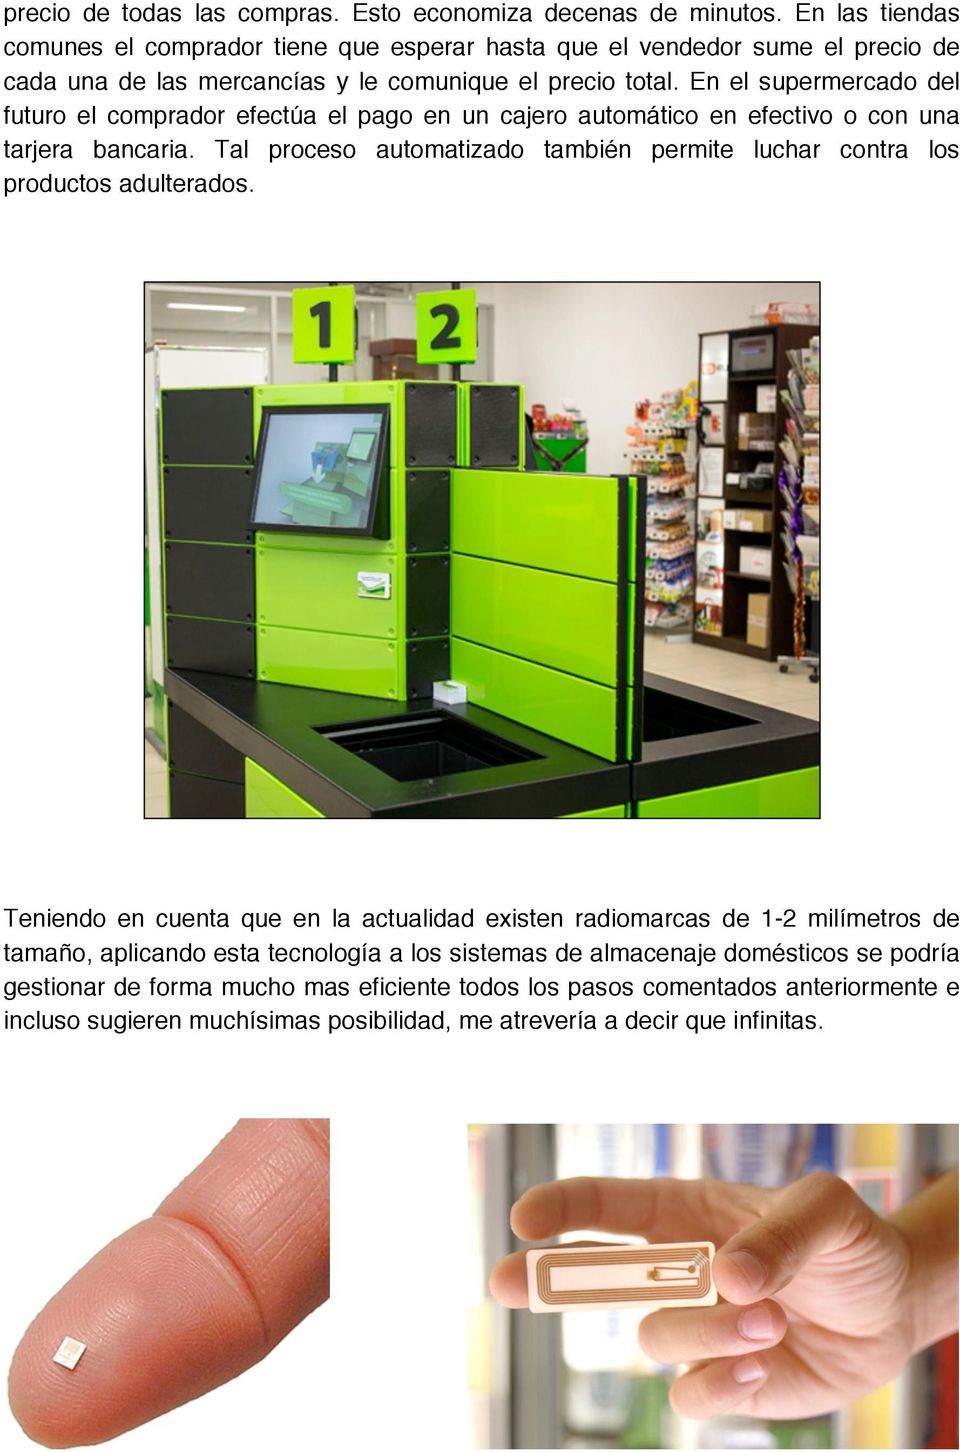 En el supermercado del futuro el comprador efectúa el pago en un cajero automático en efectivo o con una tarjera bancaria.